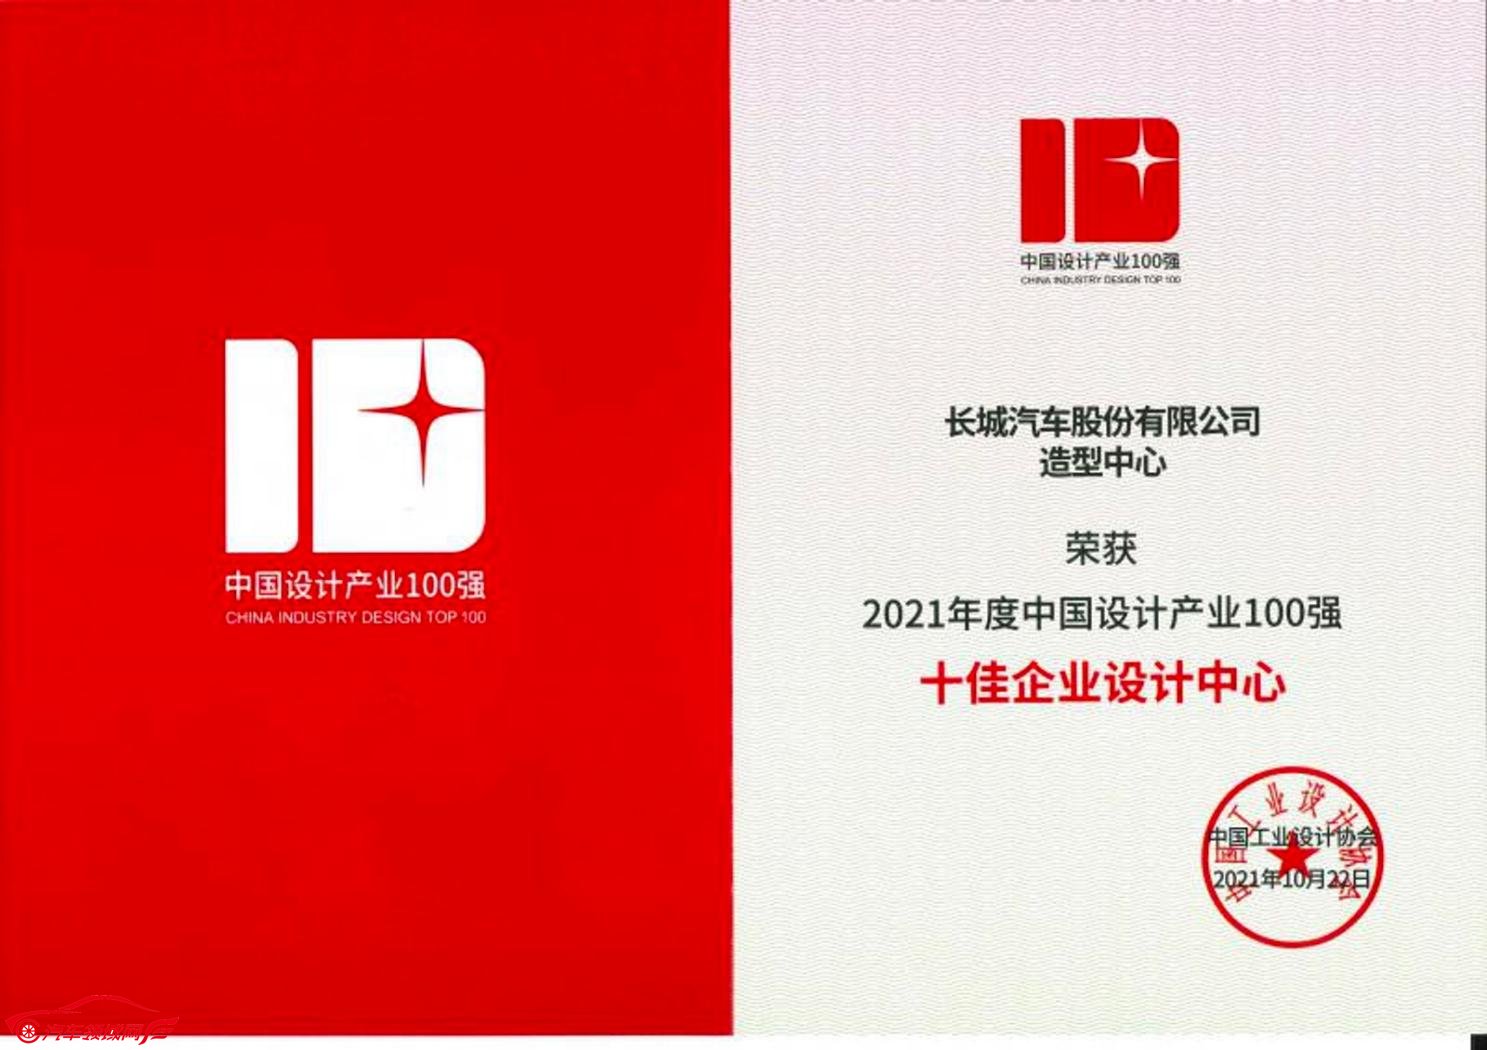 长城汽车造型中心荣获“中国十佳企业设计中心”大奖